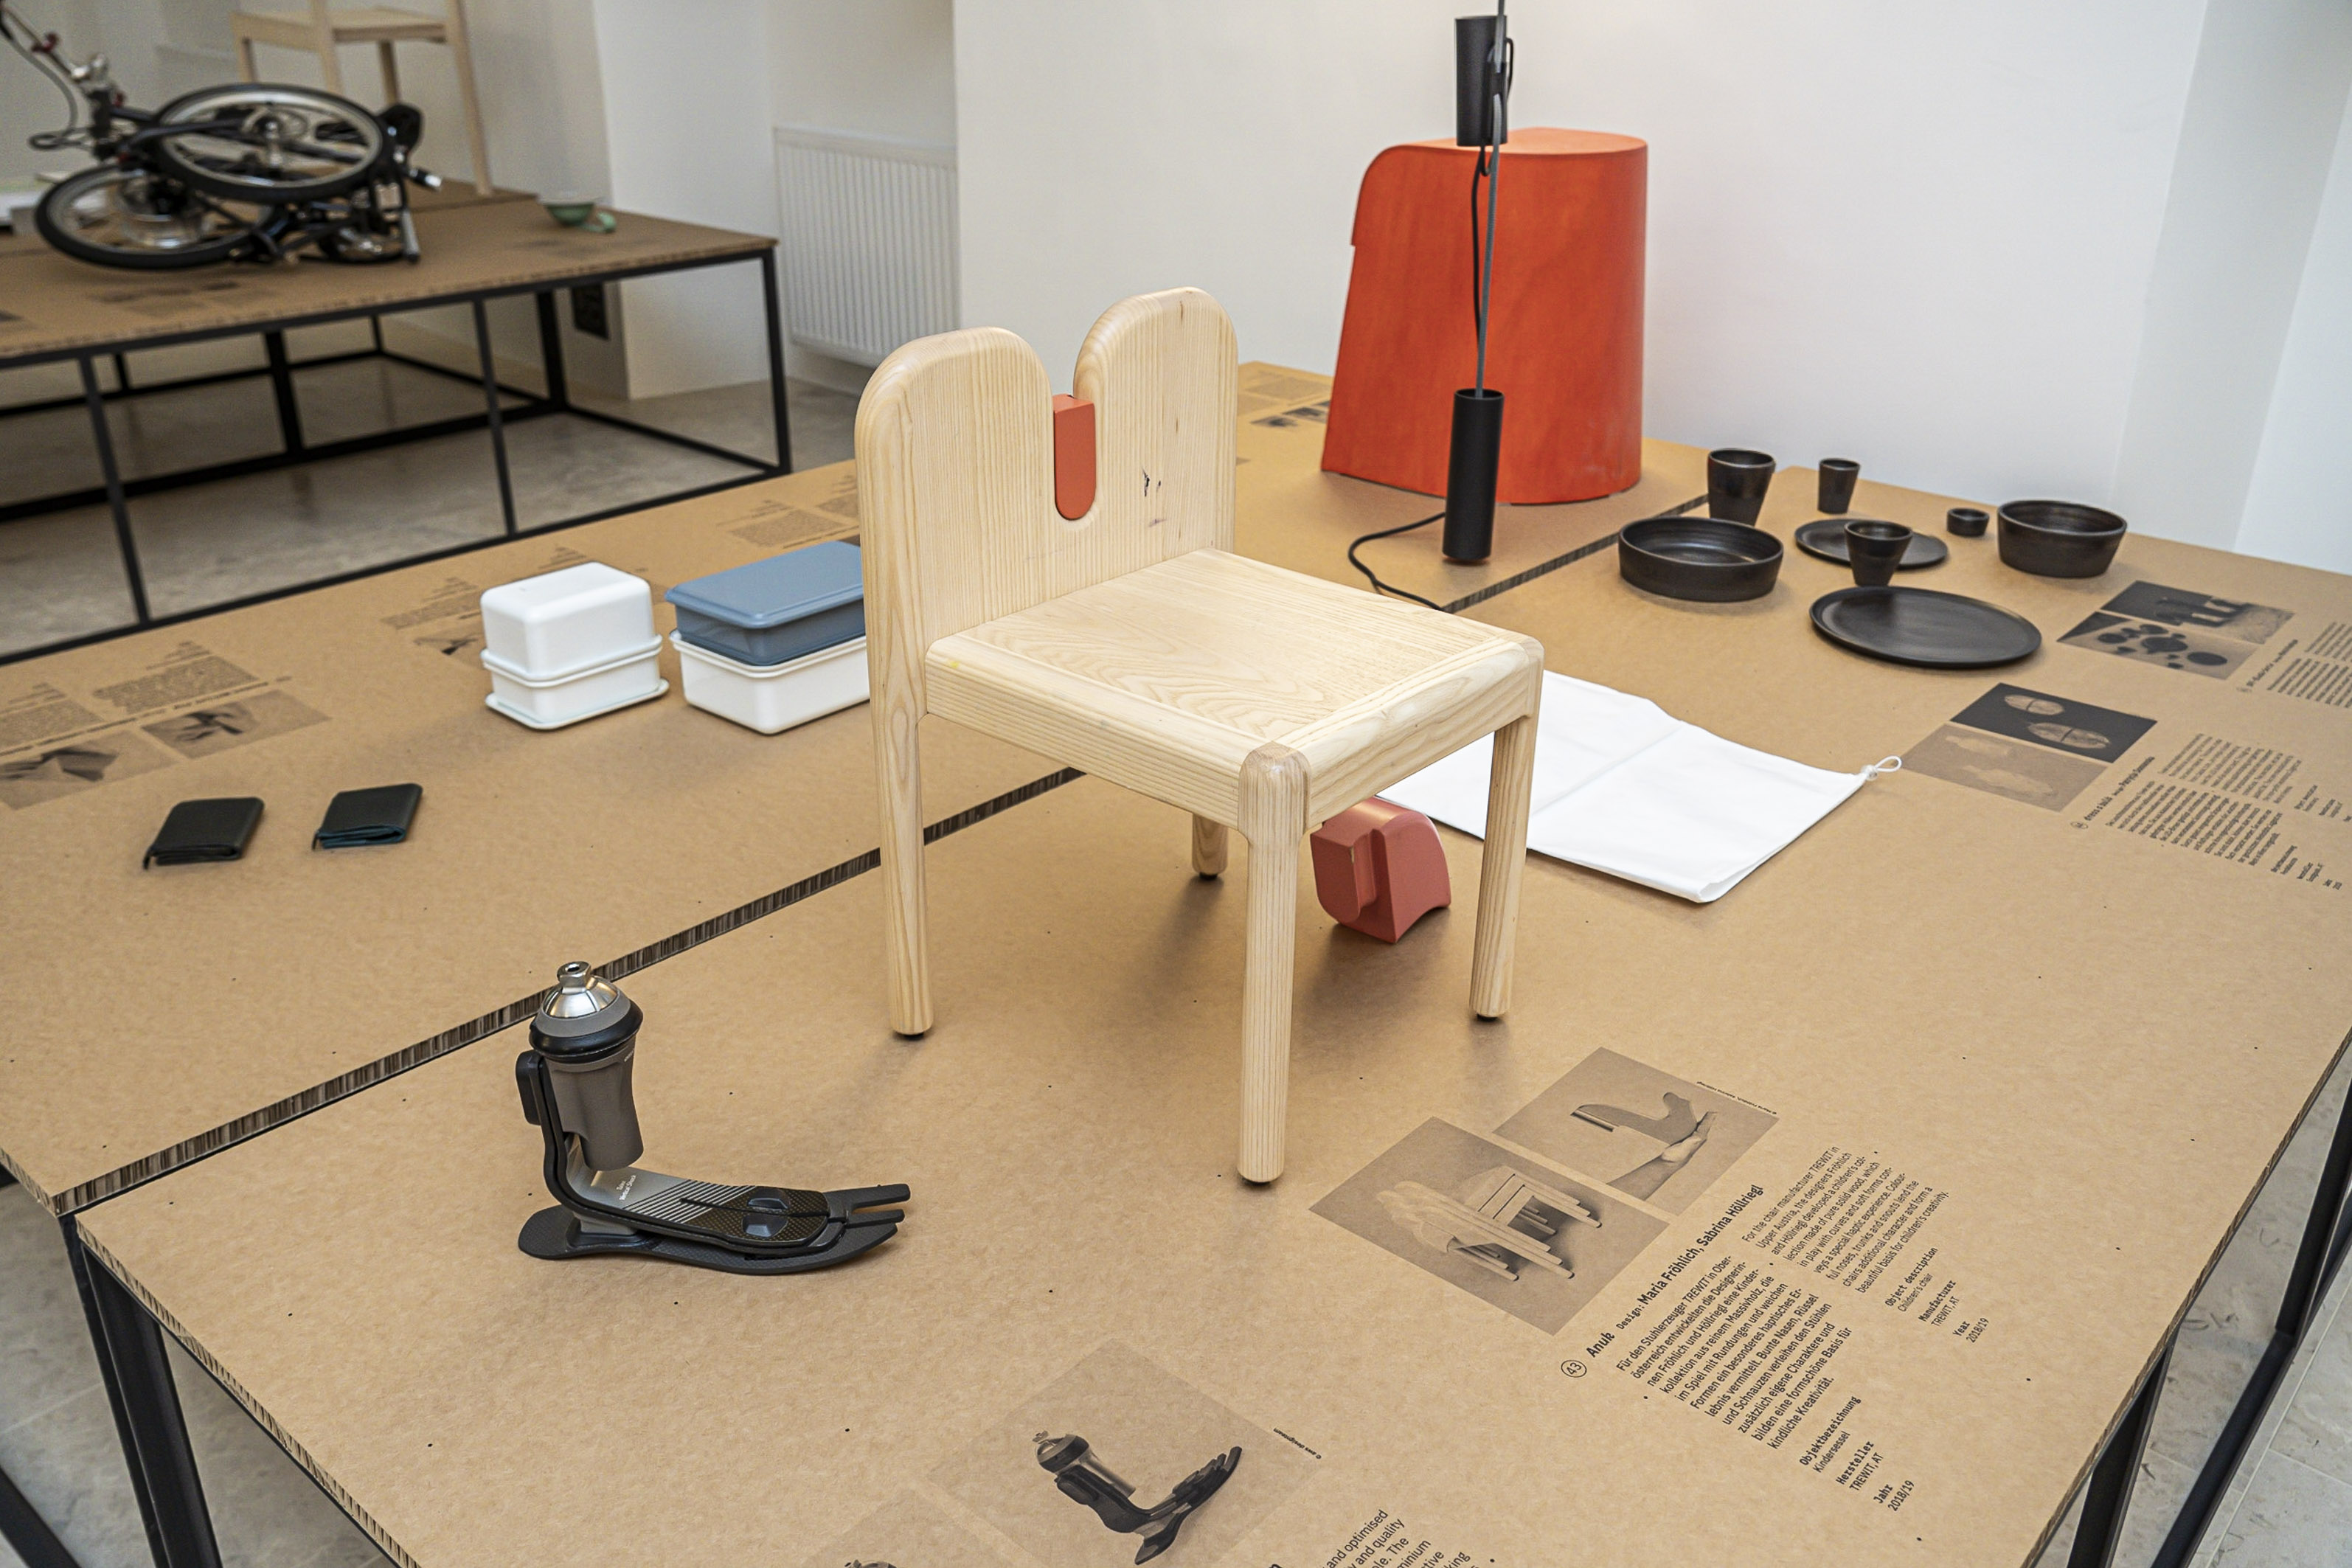 Kreative Sitzgelegenheiten, Lampen, Prothesen und mehr: Die Ausstellung "Design Everyday" zeigt außergewöhnliche Alltagsgegenstände.